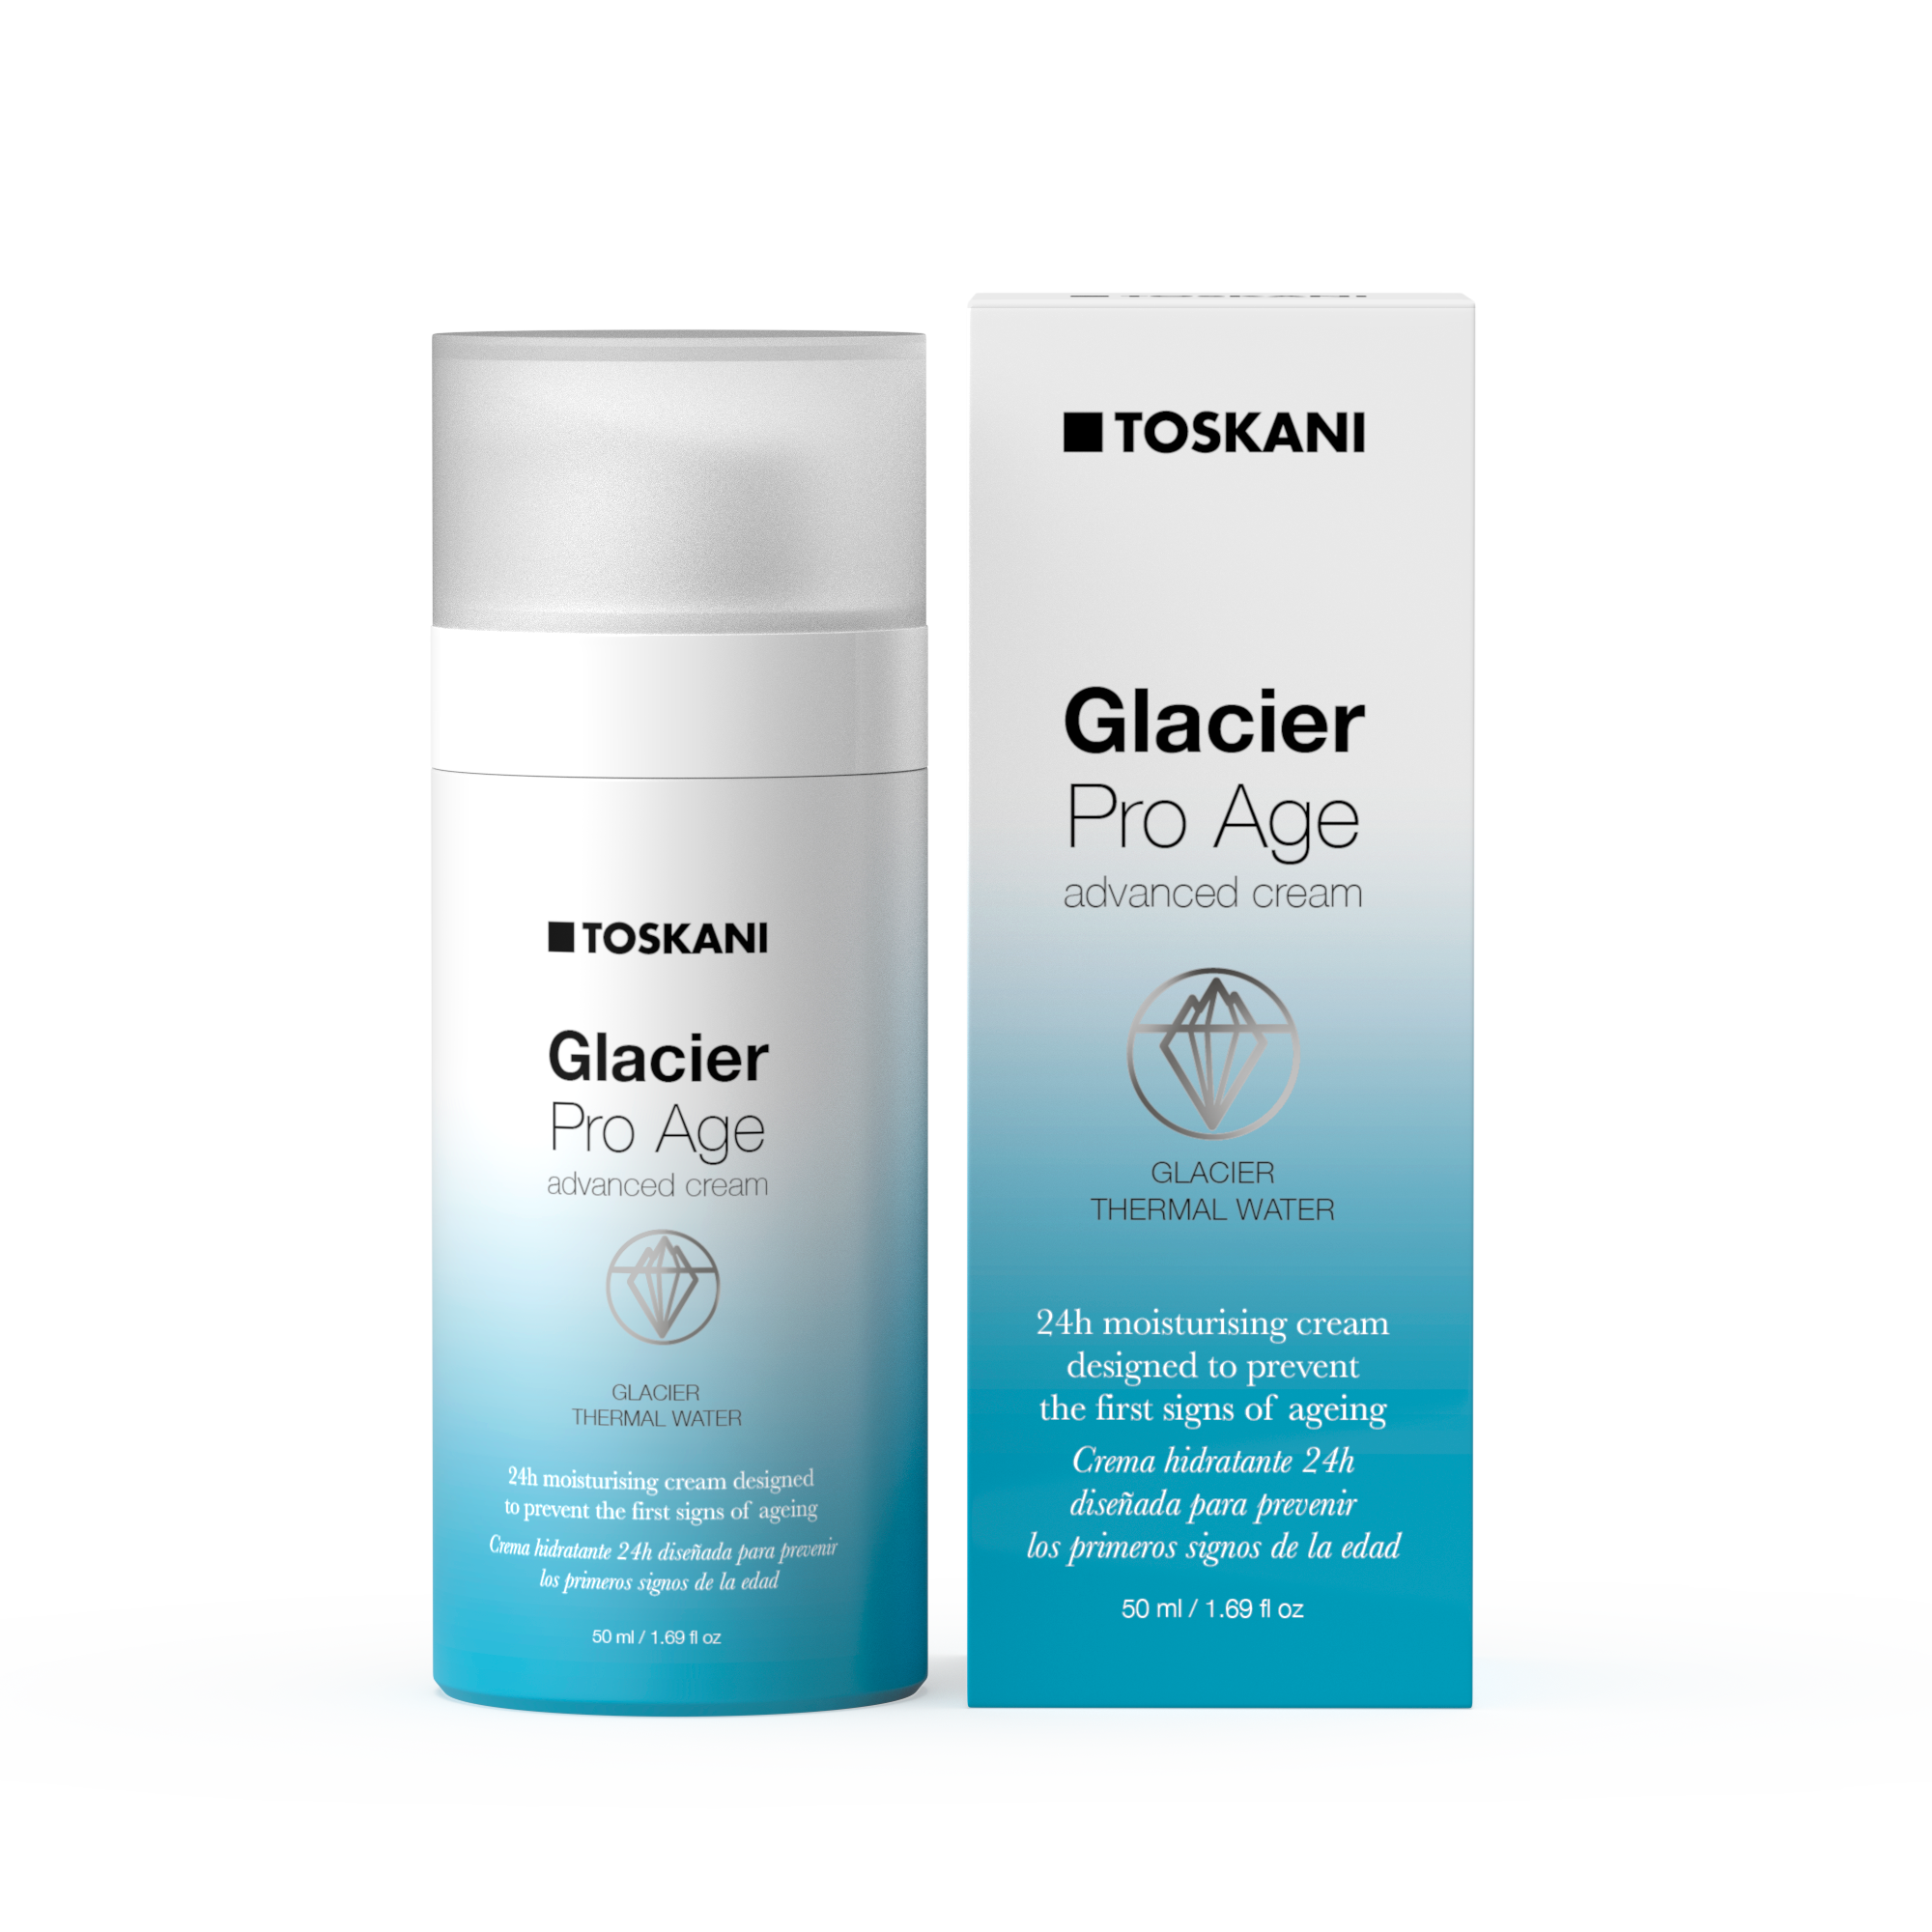 Toskani Glacier Pro Age Advanced Cream